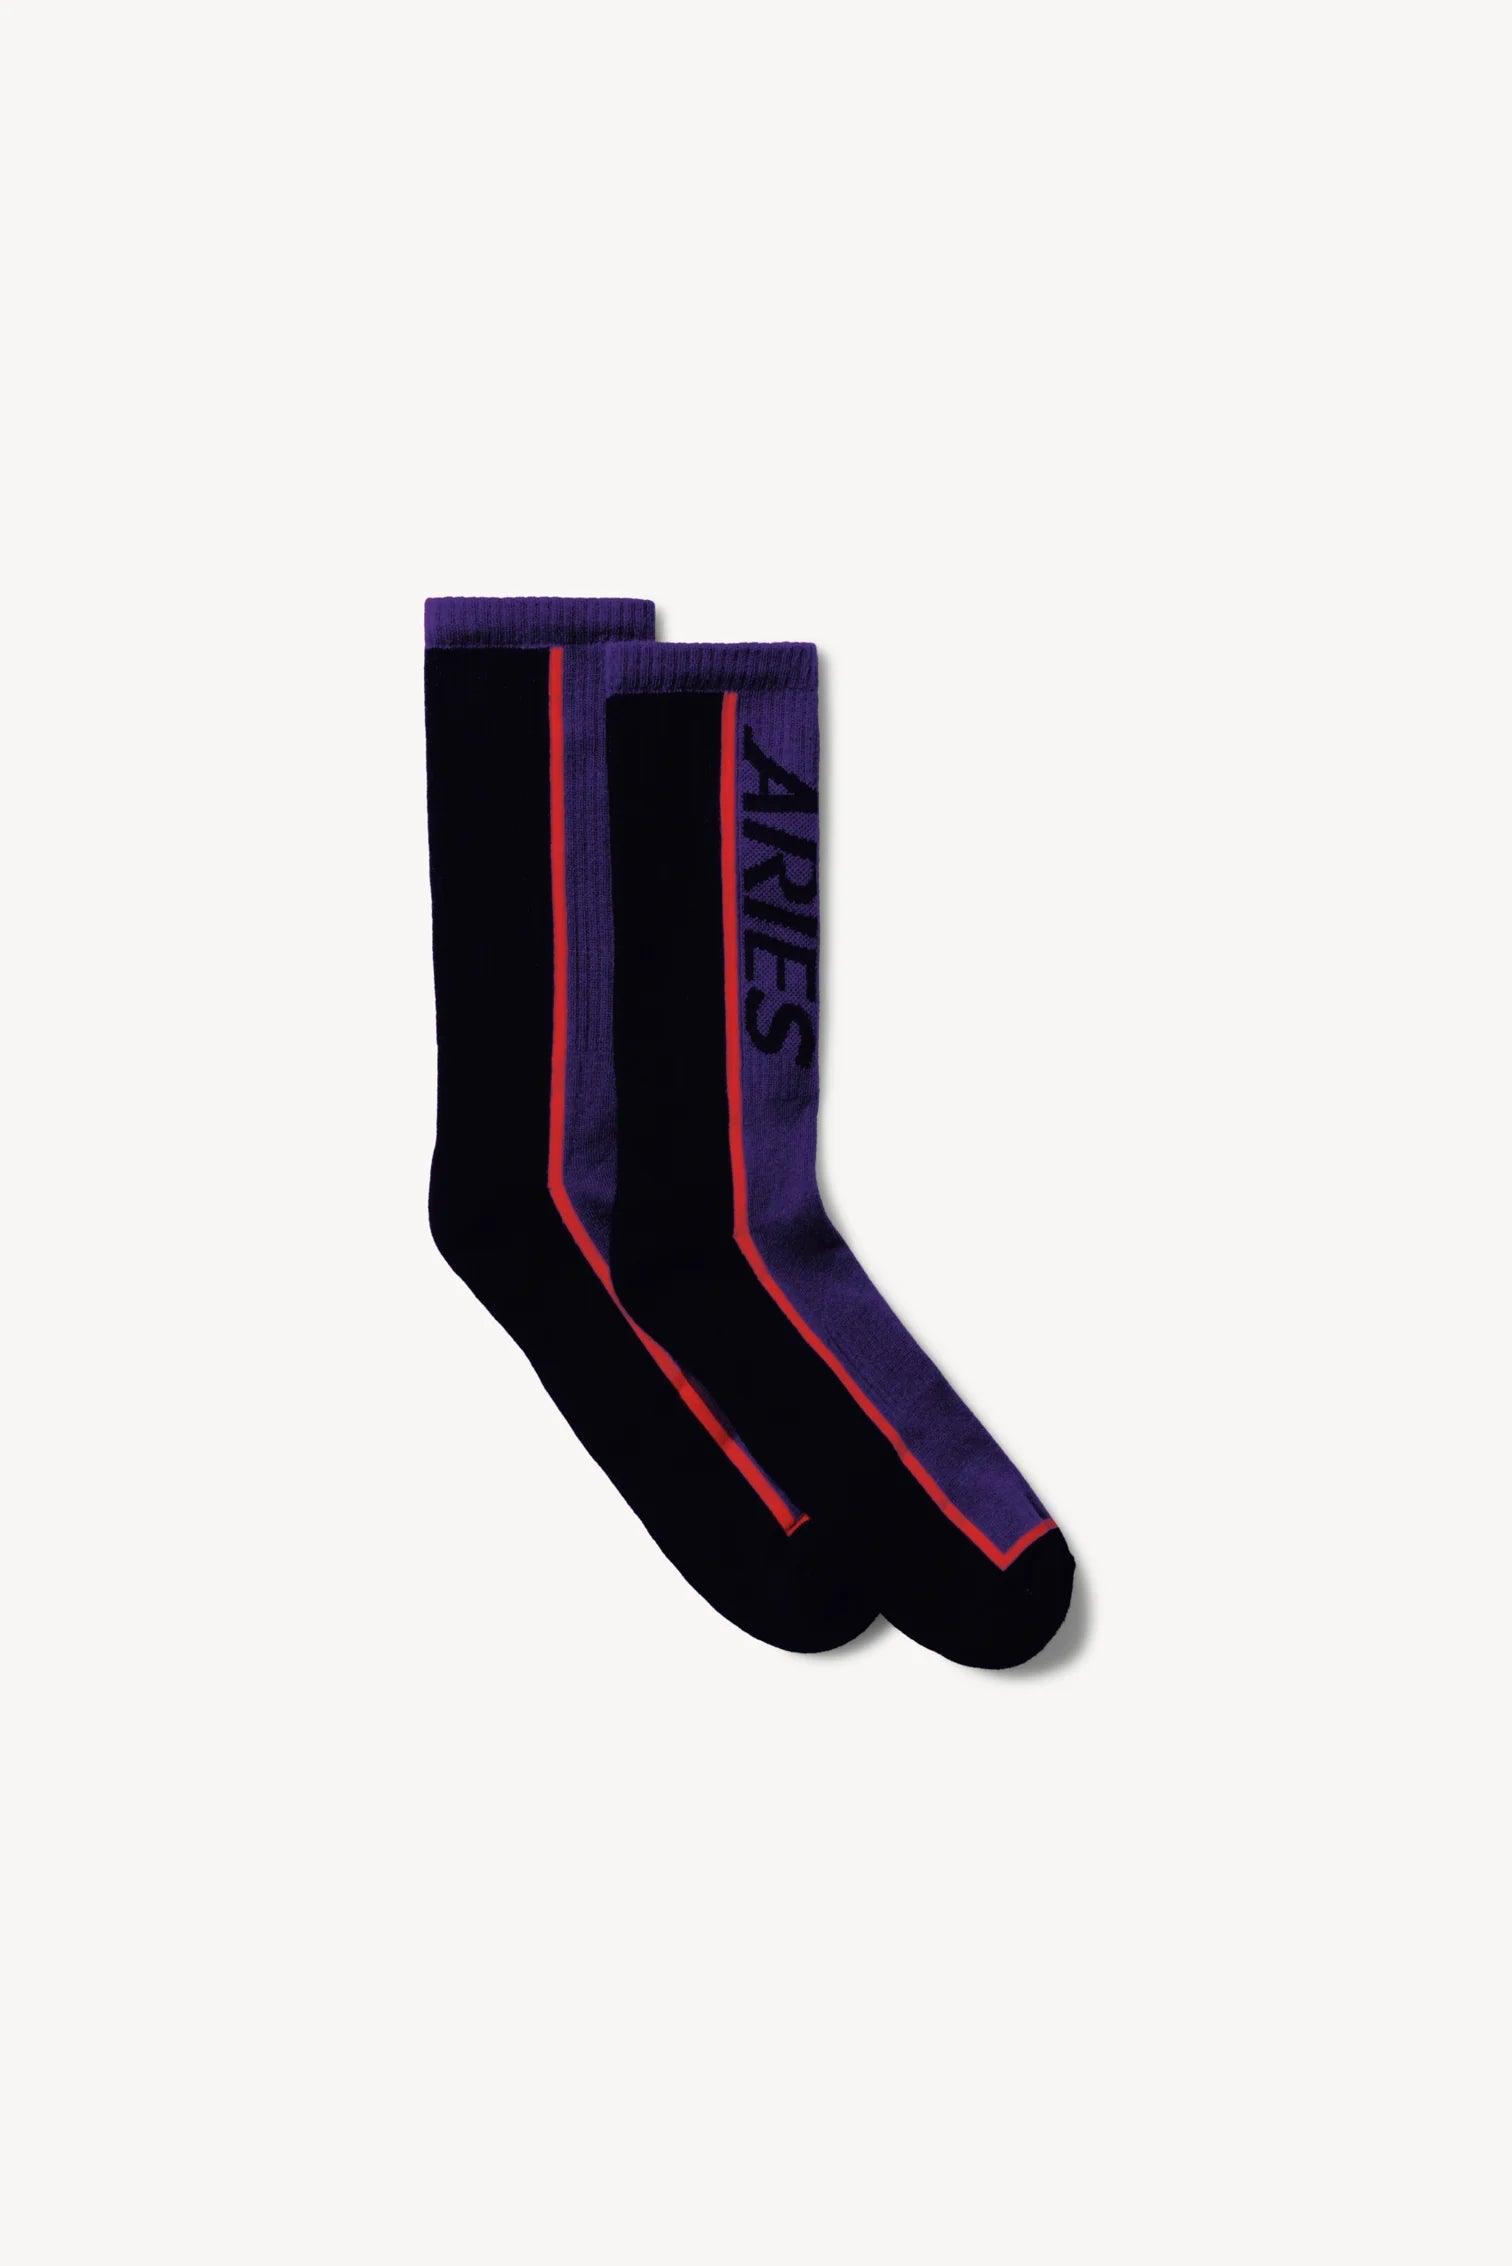 Aries Arise Credit Card Socks - Purple - L - XL - Socks